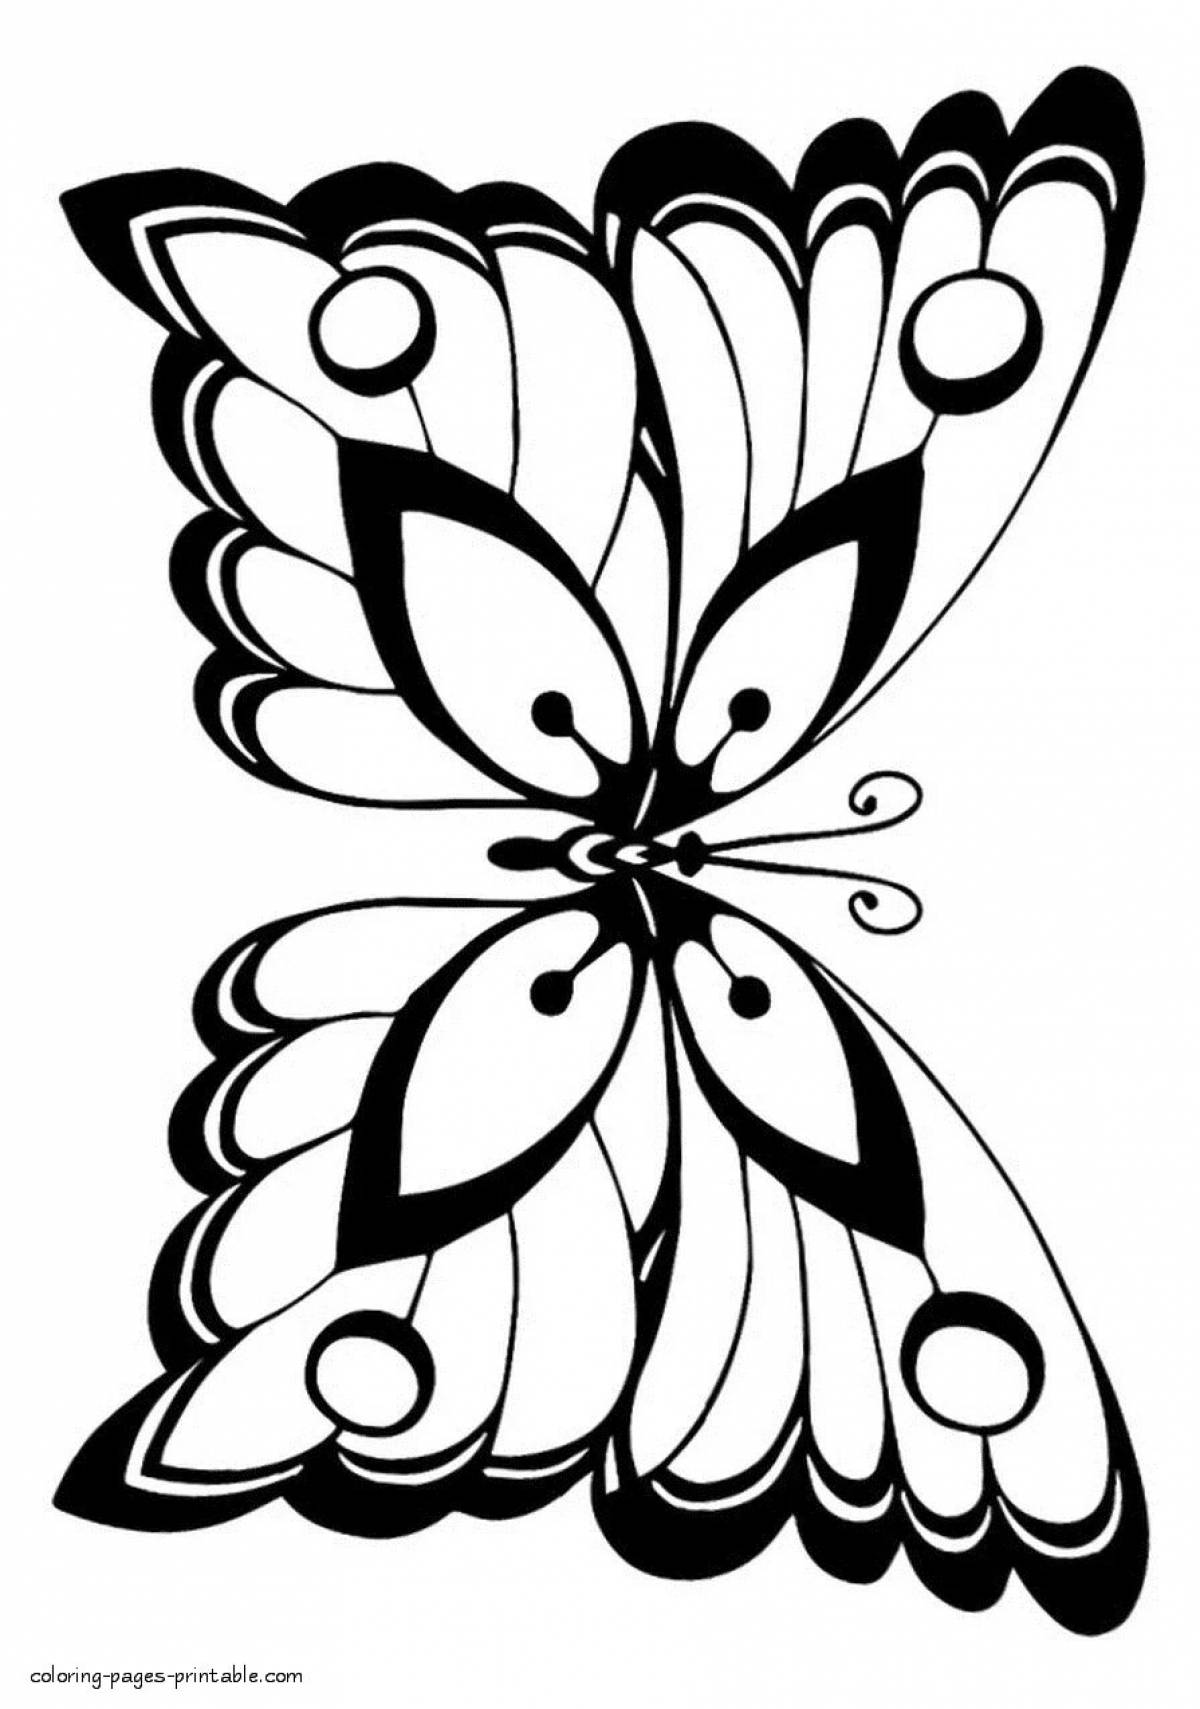 Красиво разукрасить бабочку